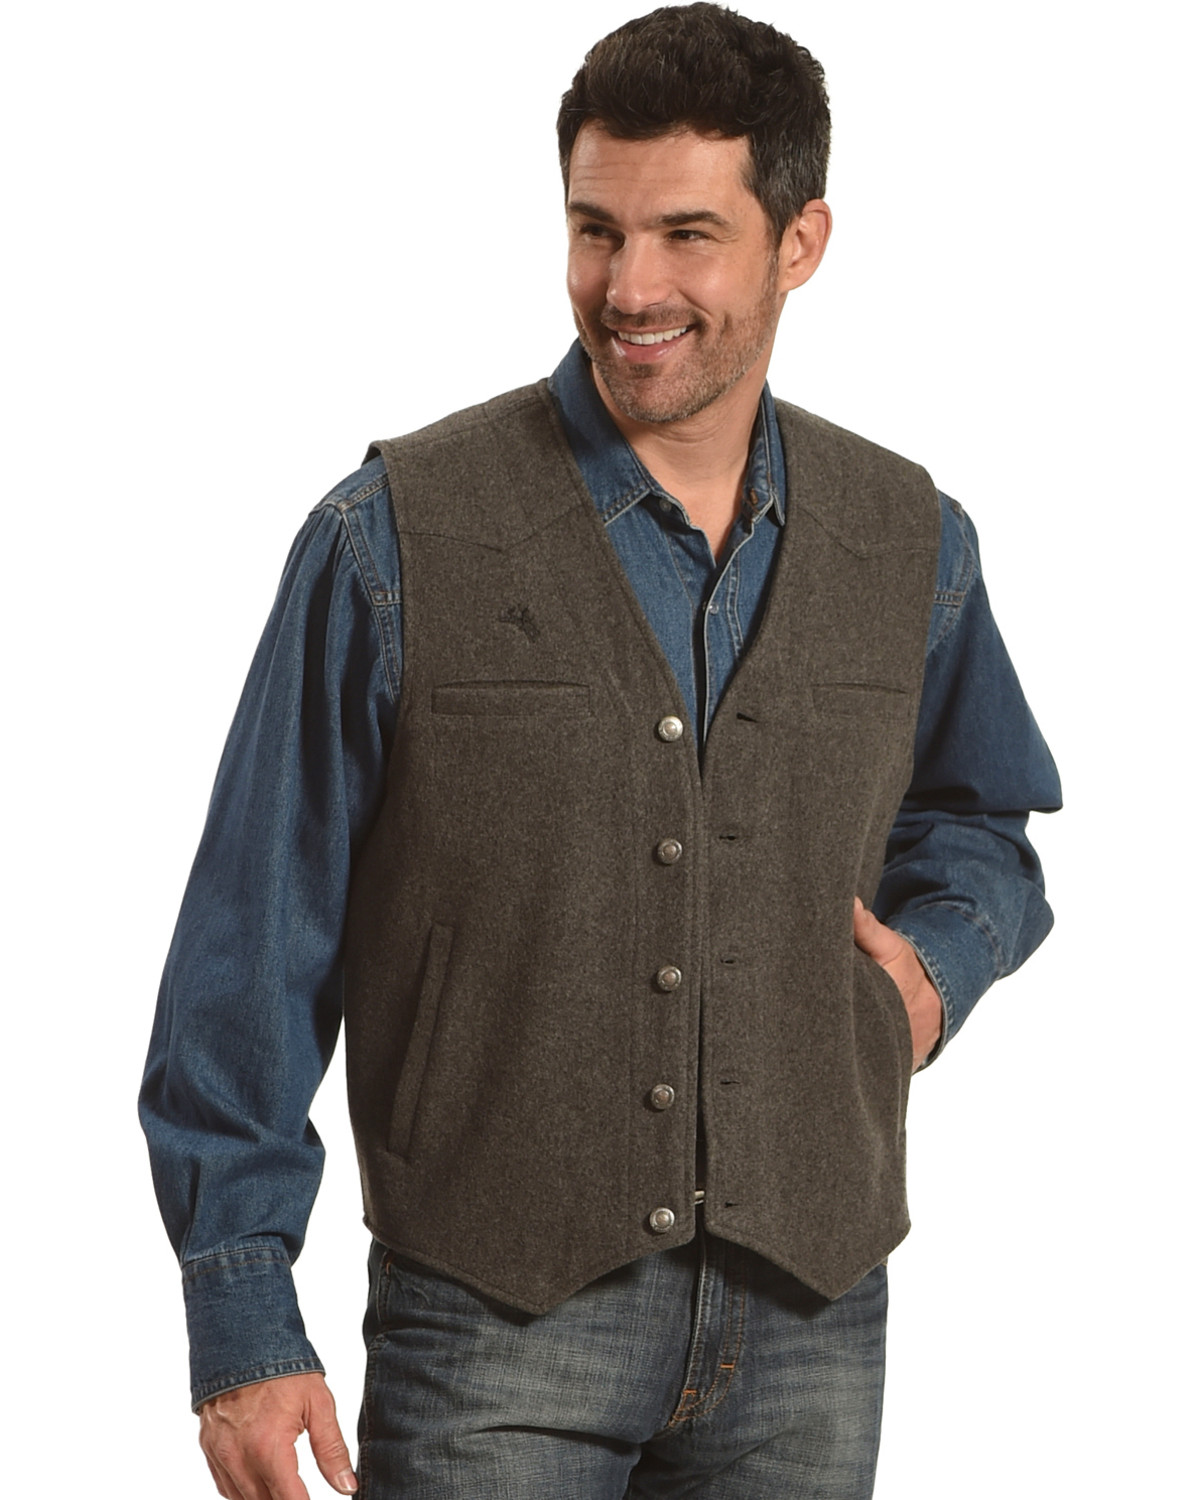 Wyoming Traders Men's Wool Vest